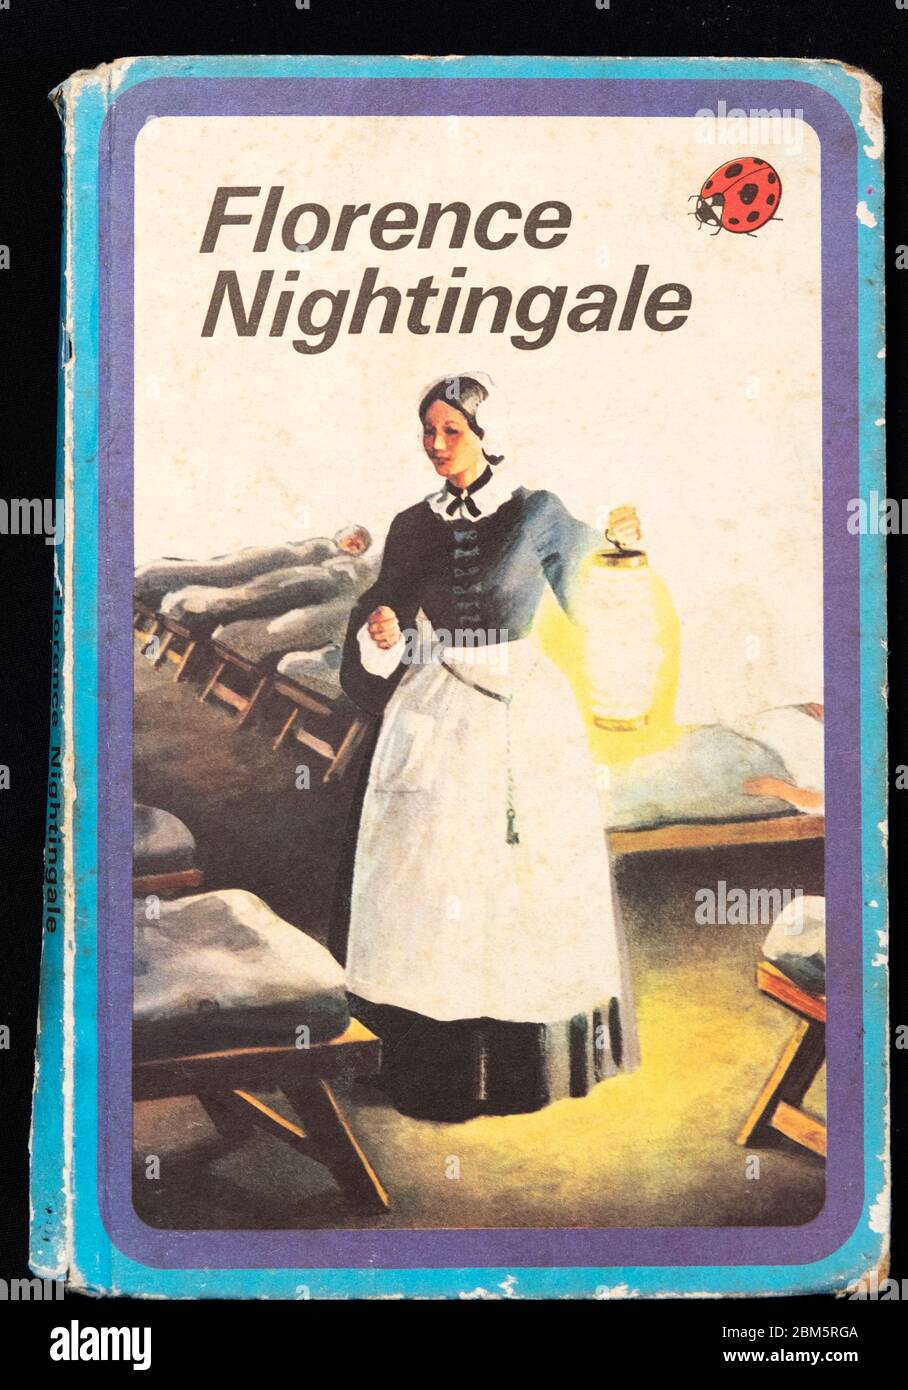 Florence Nightingale couverture de livre Ladybird publié dans 1959 livres pour enfants des années 1950 Londres Angleterre Royaume-Uni Banque D'Images